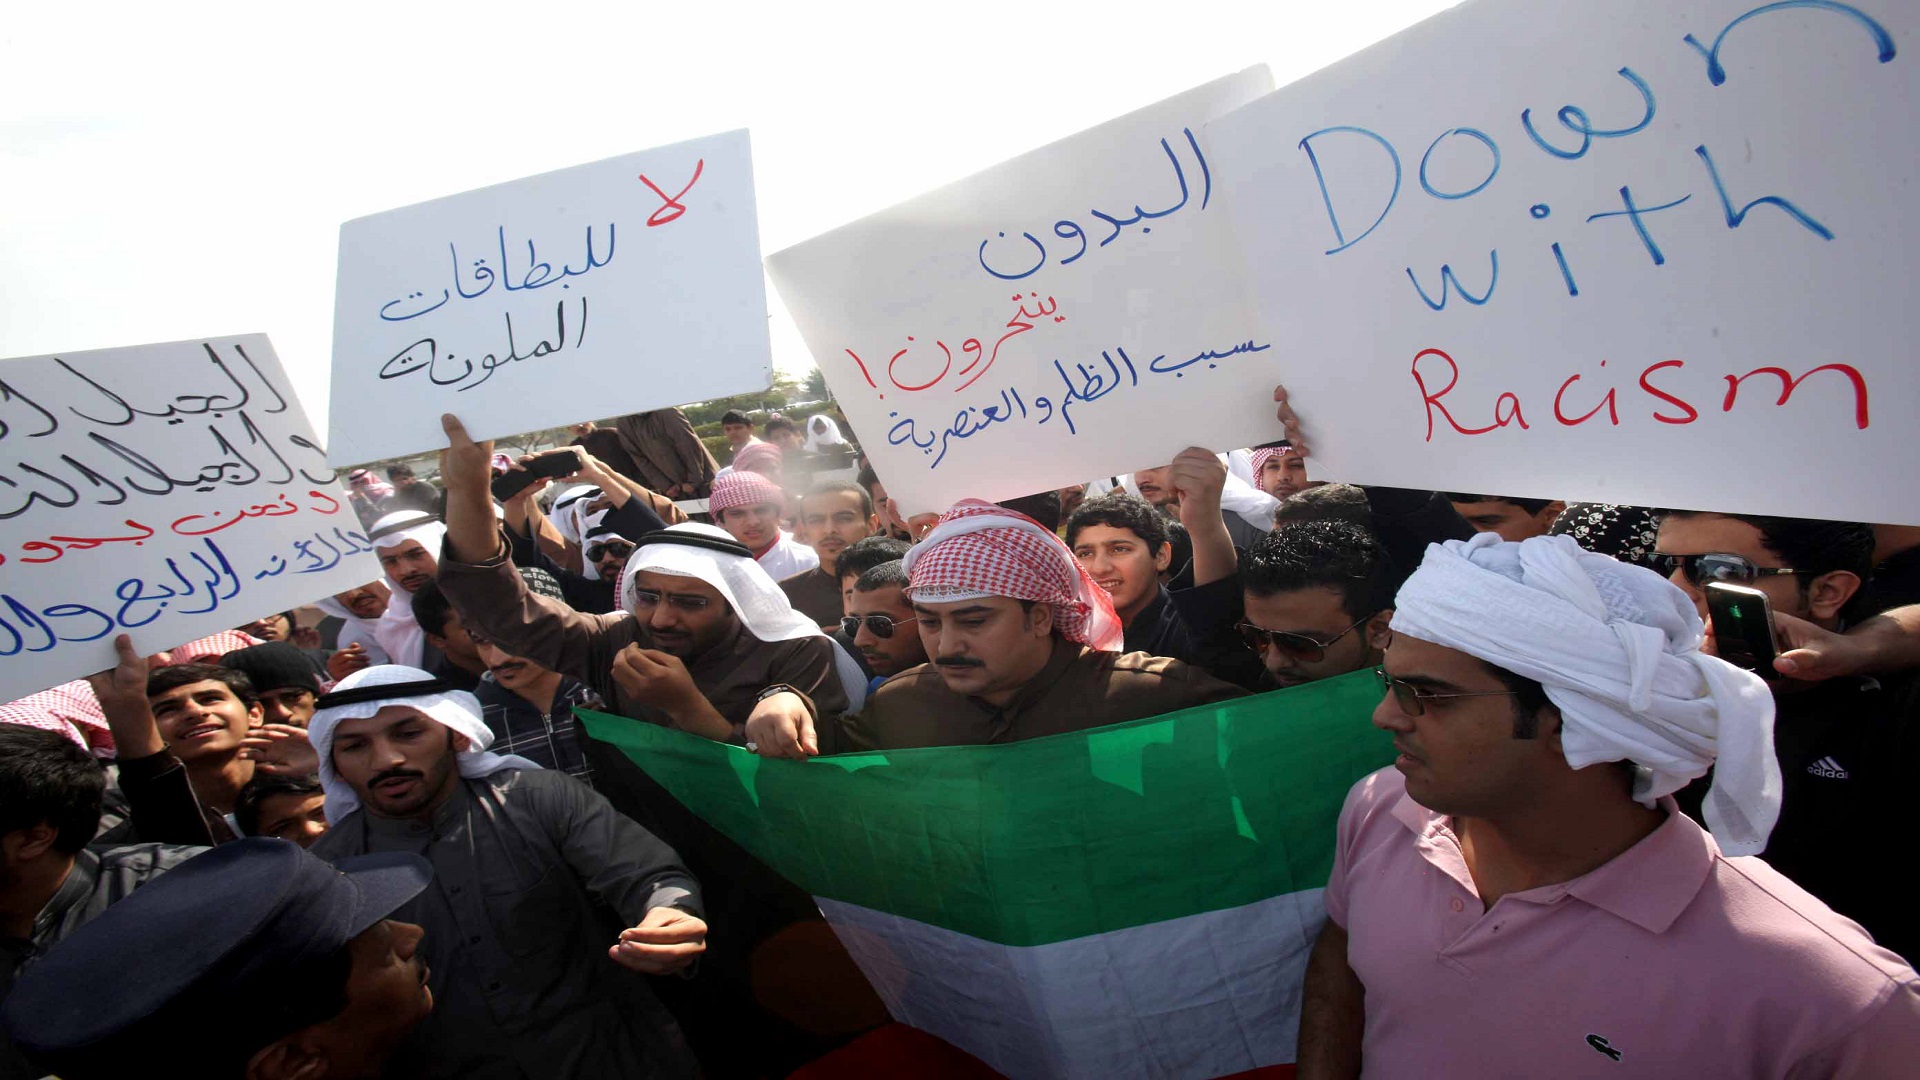 صورة سبب اضراب البدون عن الطعام في الكويت